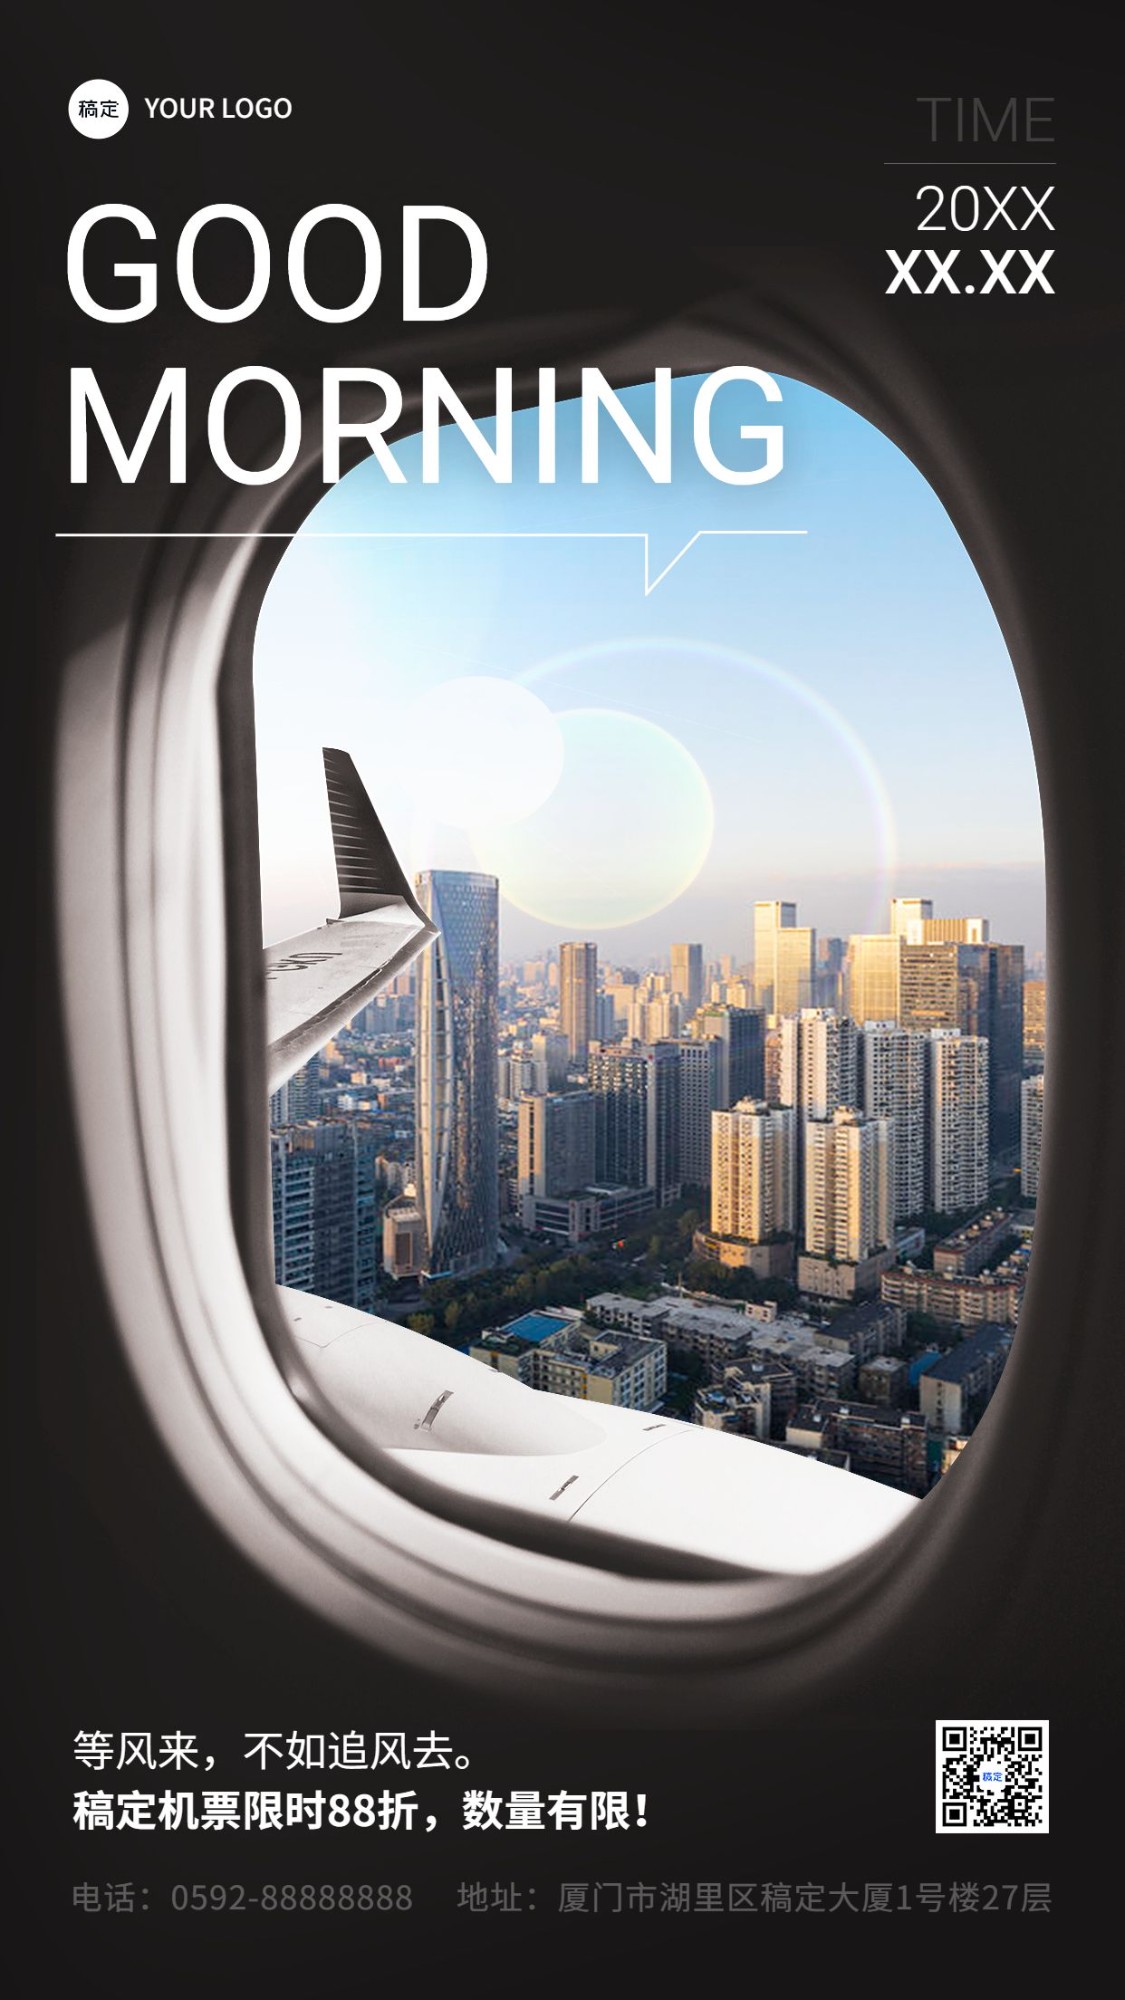 旅游出行早安问候营销日签飞机舷窗元素设计手机海报